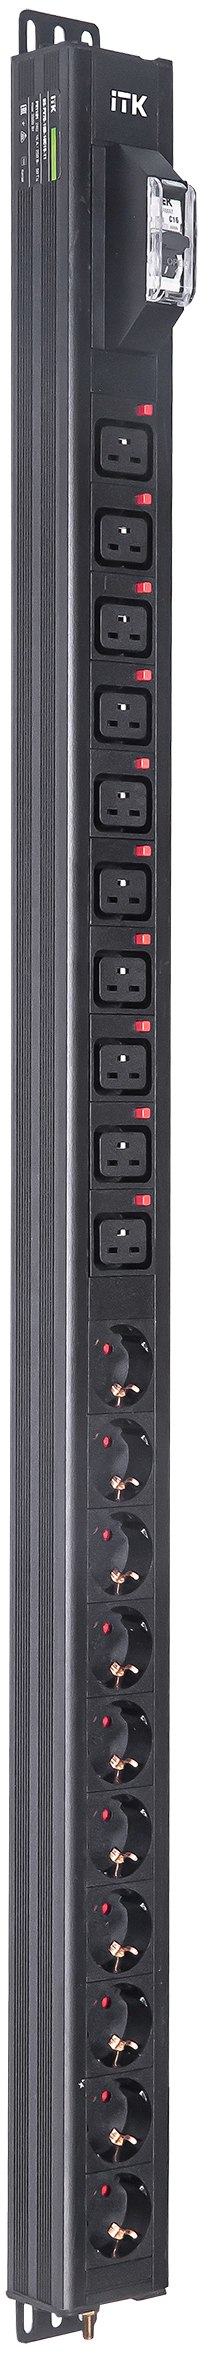 ITK BASE PDU вертикальный PV1101 24U 1 фаза 16А 10 розеток SCHUKO (немецкий стандарт) + 10 розеток C19 без кабеля с входным разъемом C20